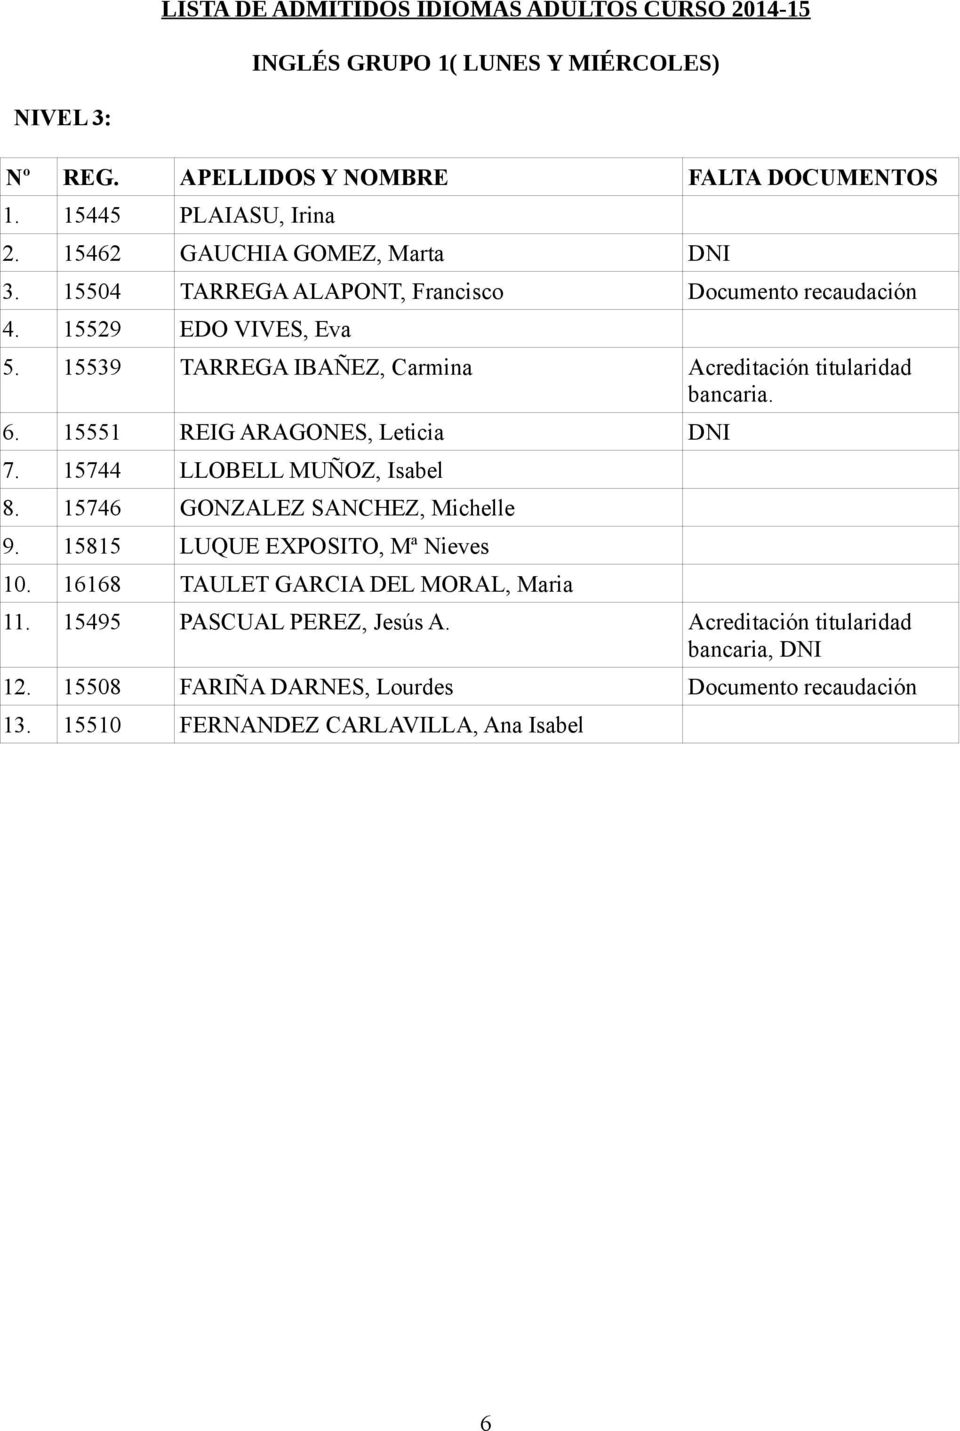 15551 REIG ARAGONES, Leticia DNI 7. 15744 LLOBELL MUÑOZ, Isabel 8. 15746 GONZALEZ SANCHEZ, Michelle 9.